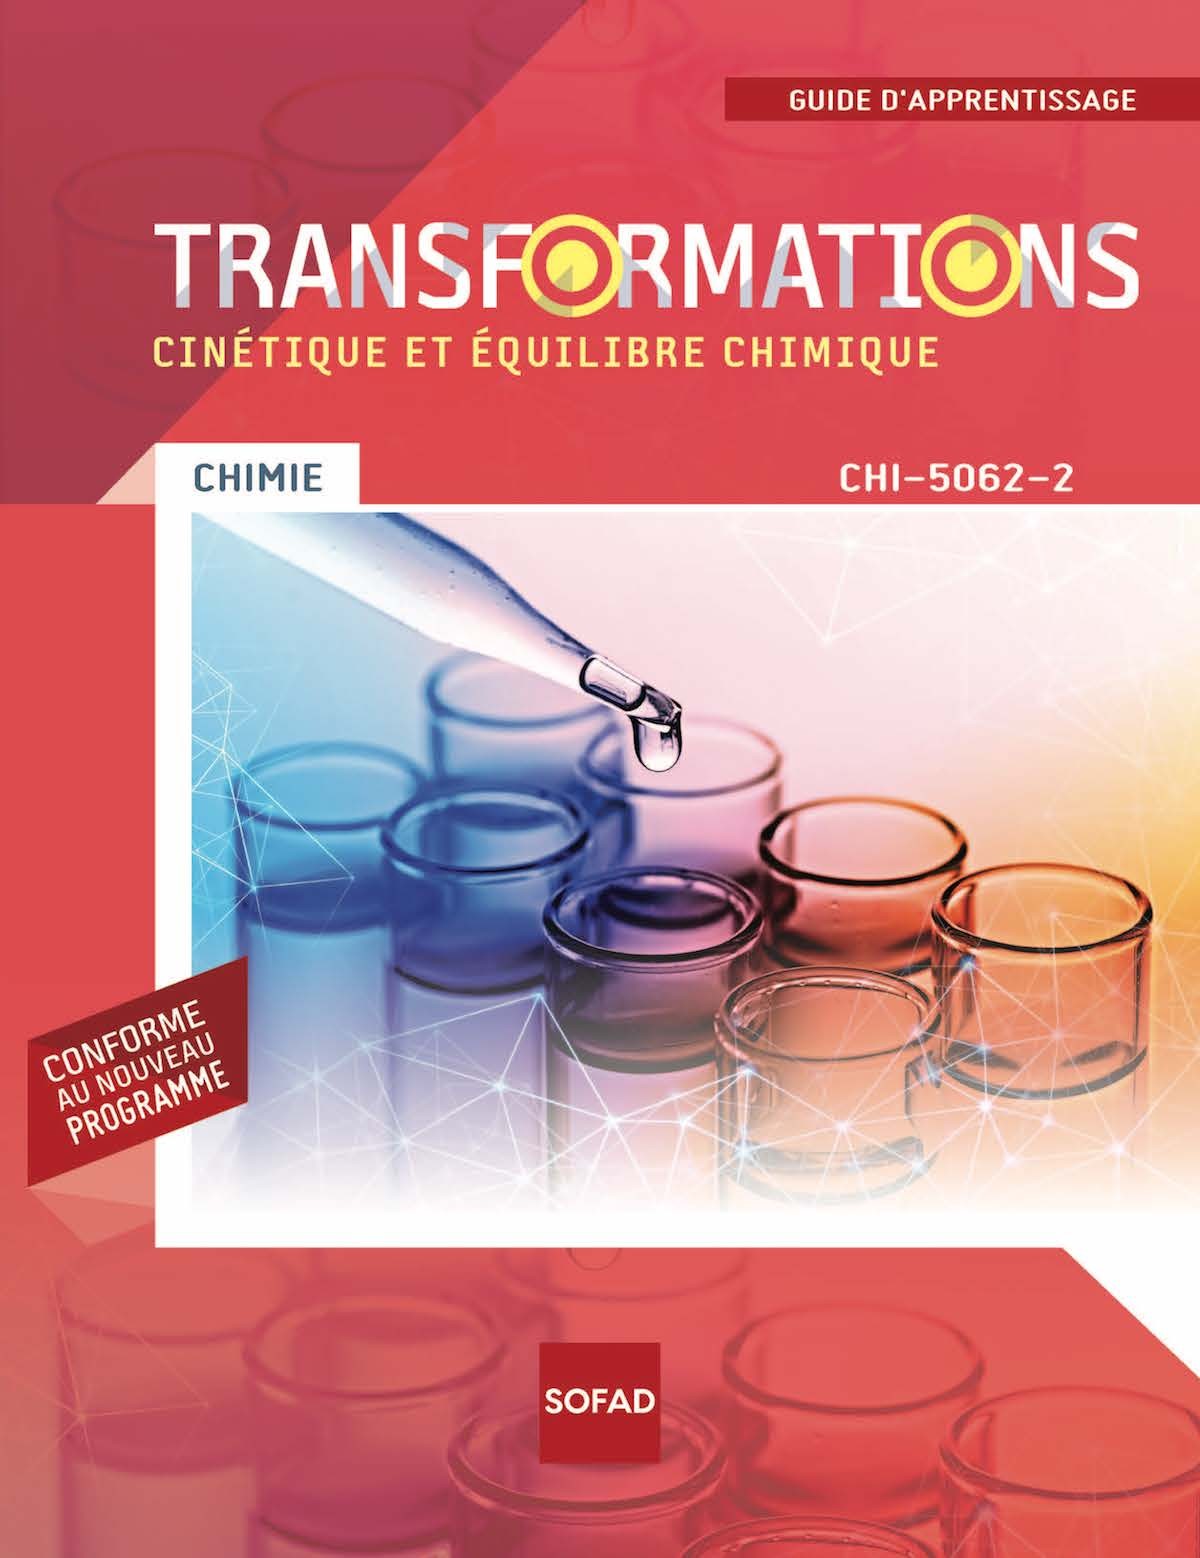 CHI-5062-2 Cinétique et équilibre chimique (Sofad 2020)